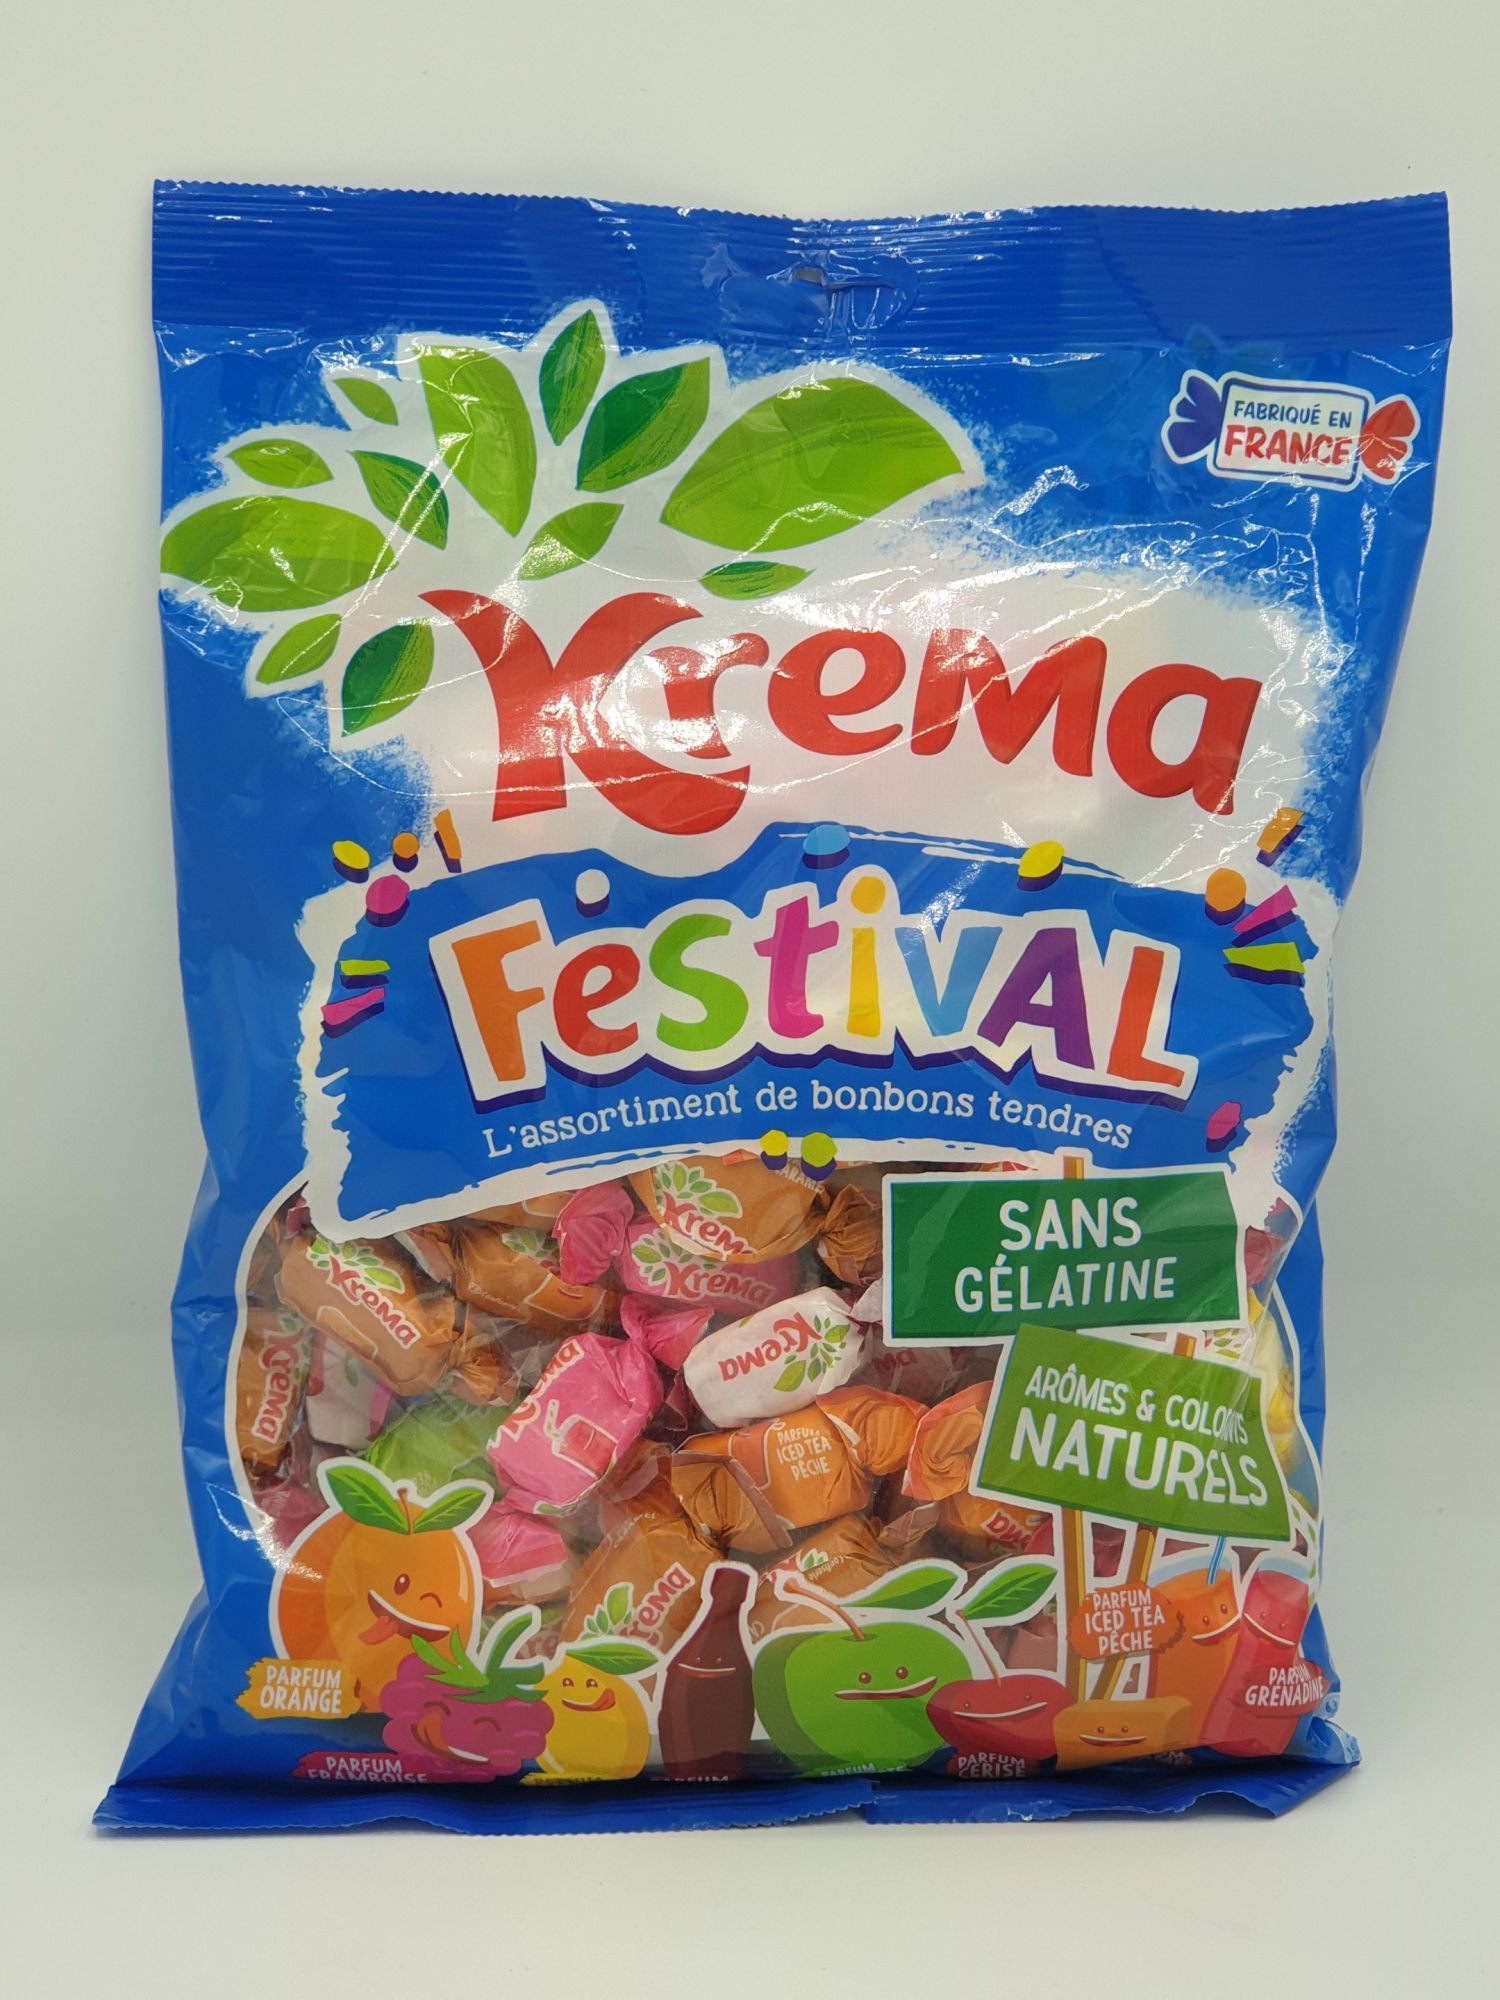 Kréma Festival